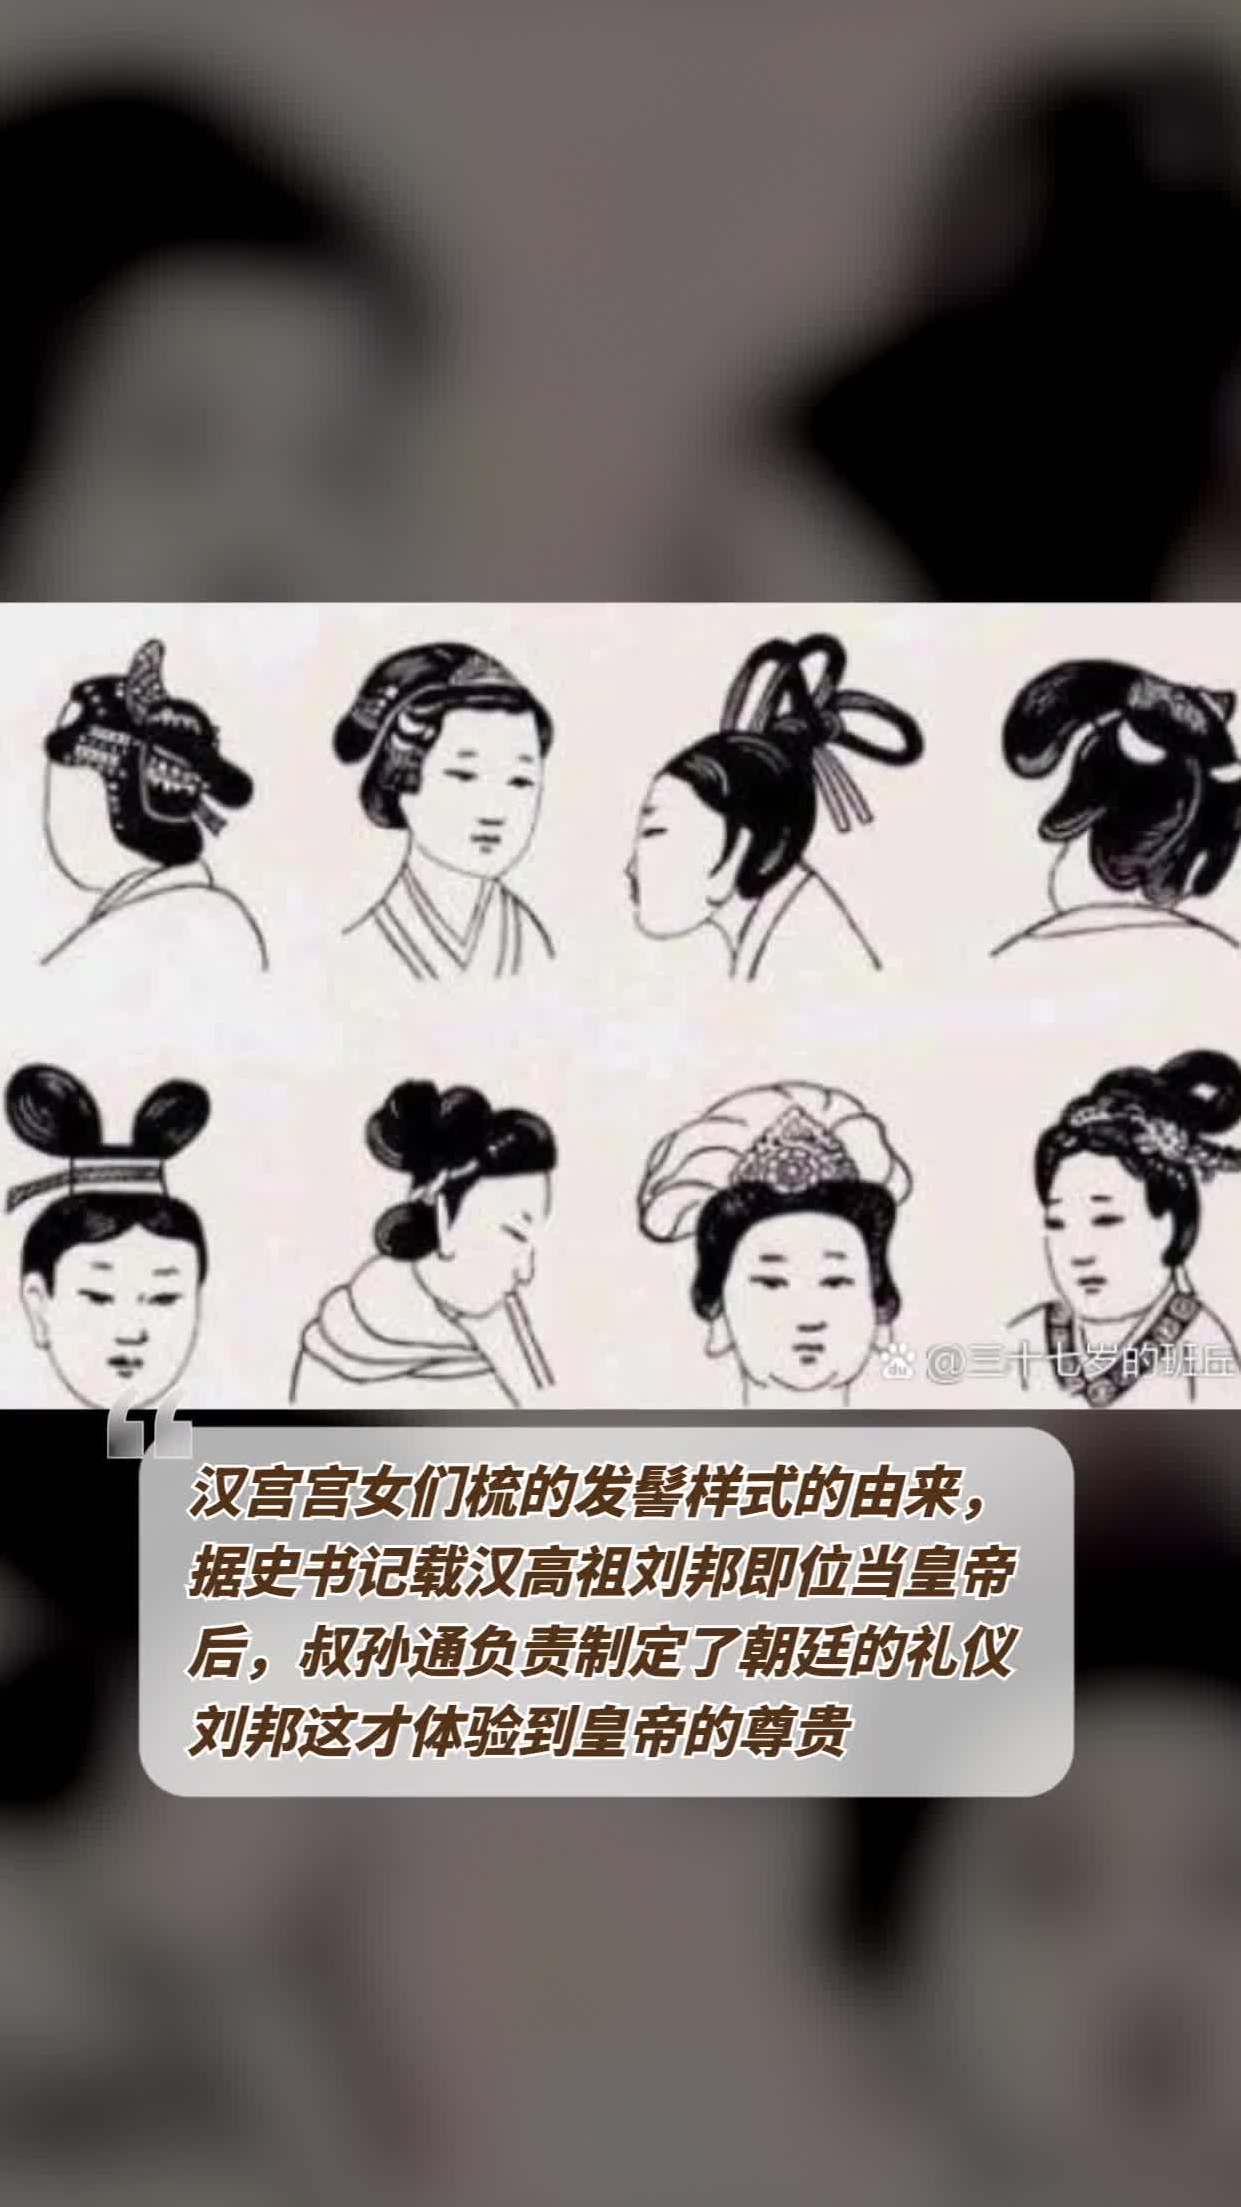 汉宫宫女们梳的发髻样式的由来,据史书记载汉高祖刘邦